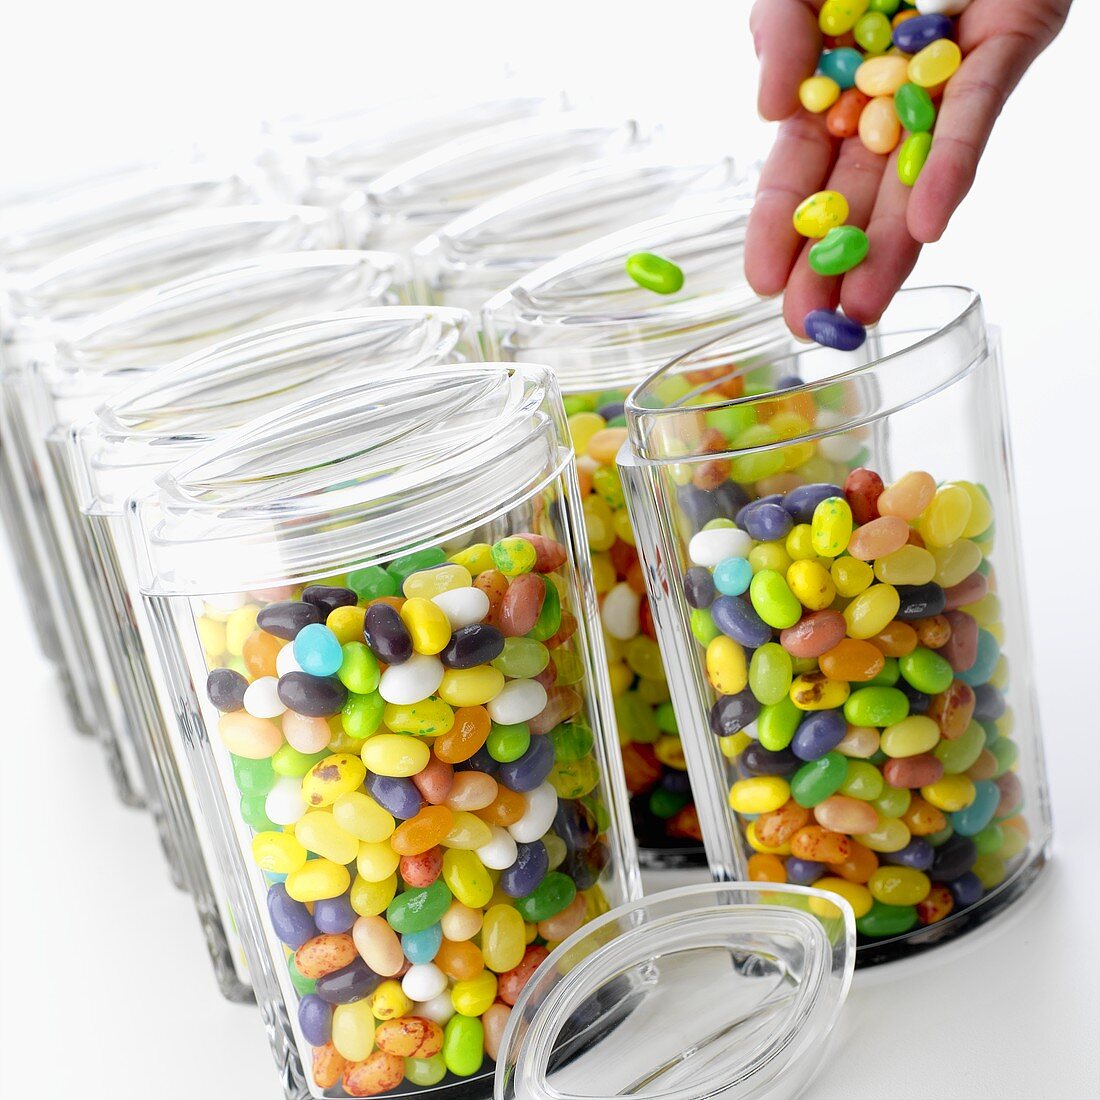 Hand füllt Behälter mit Jelly Beans